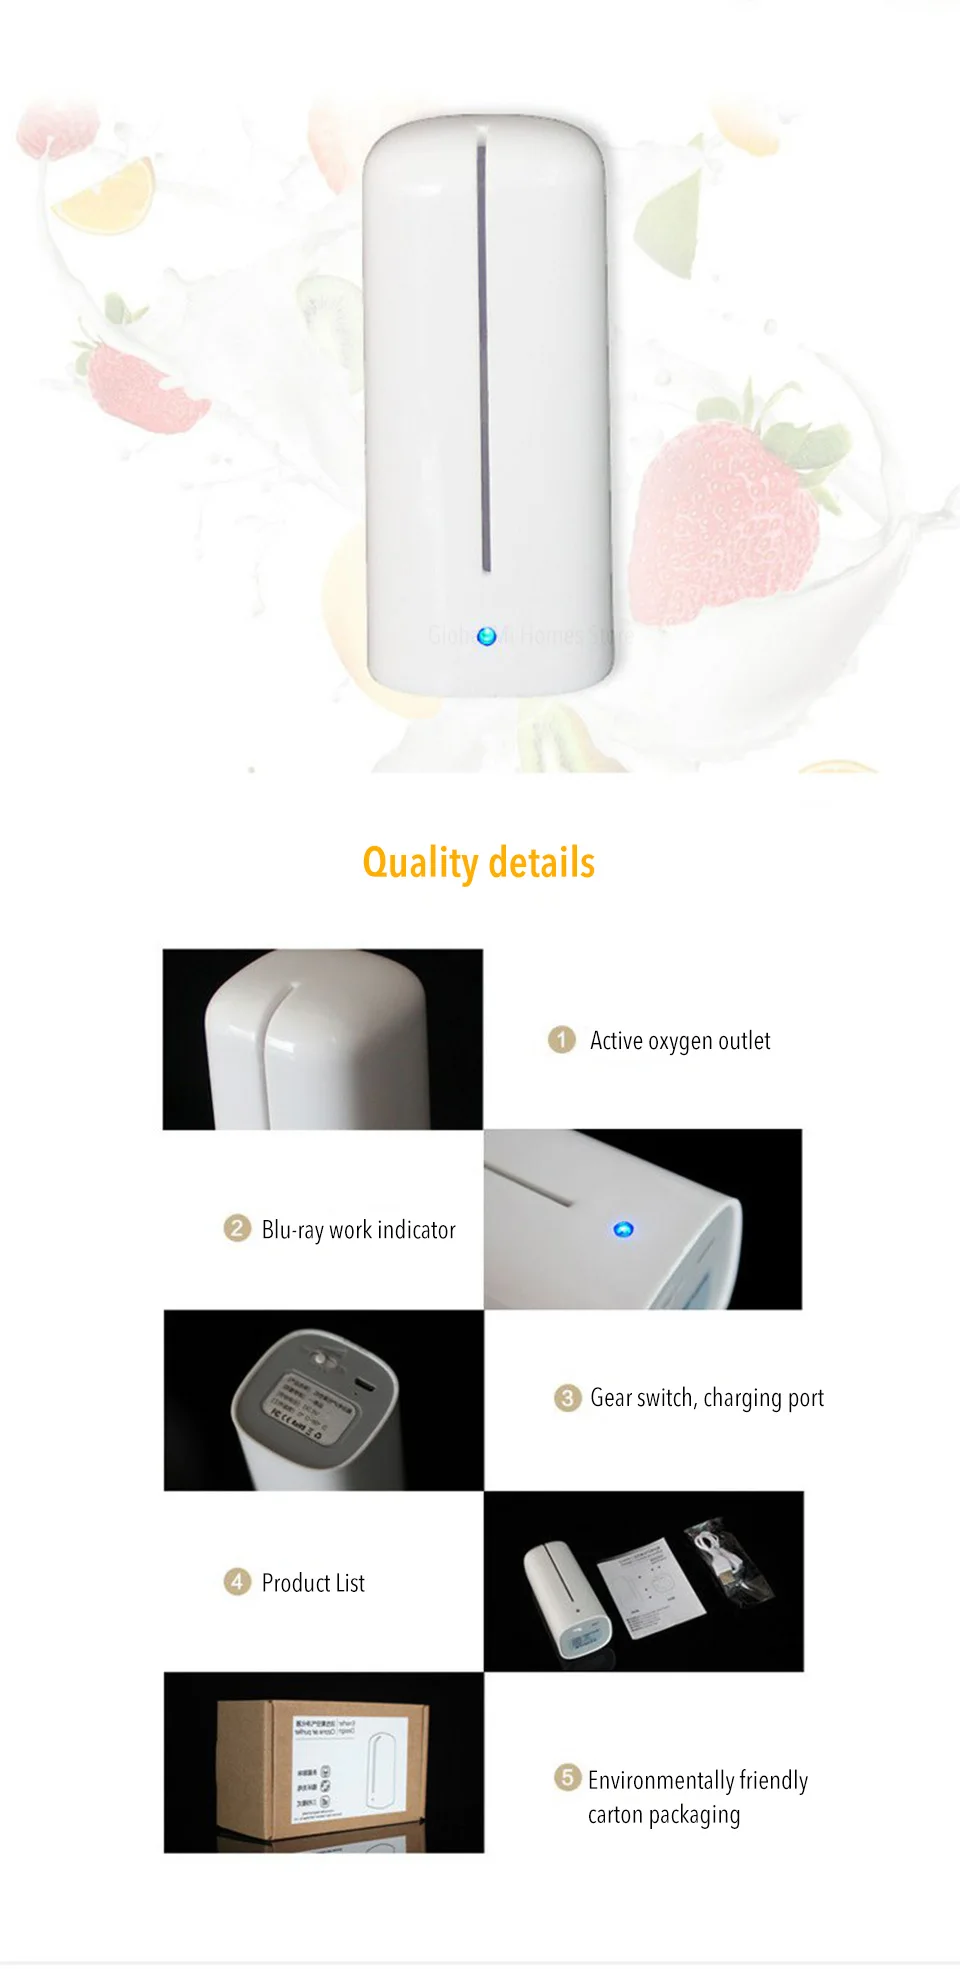 Xiaomi Energy дезодорант для холодильника активный кислородный очиститель воздуха можно заряжать для стерилизации удаления запахов свежего хранения